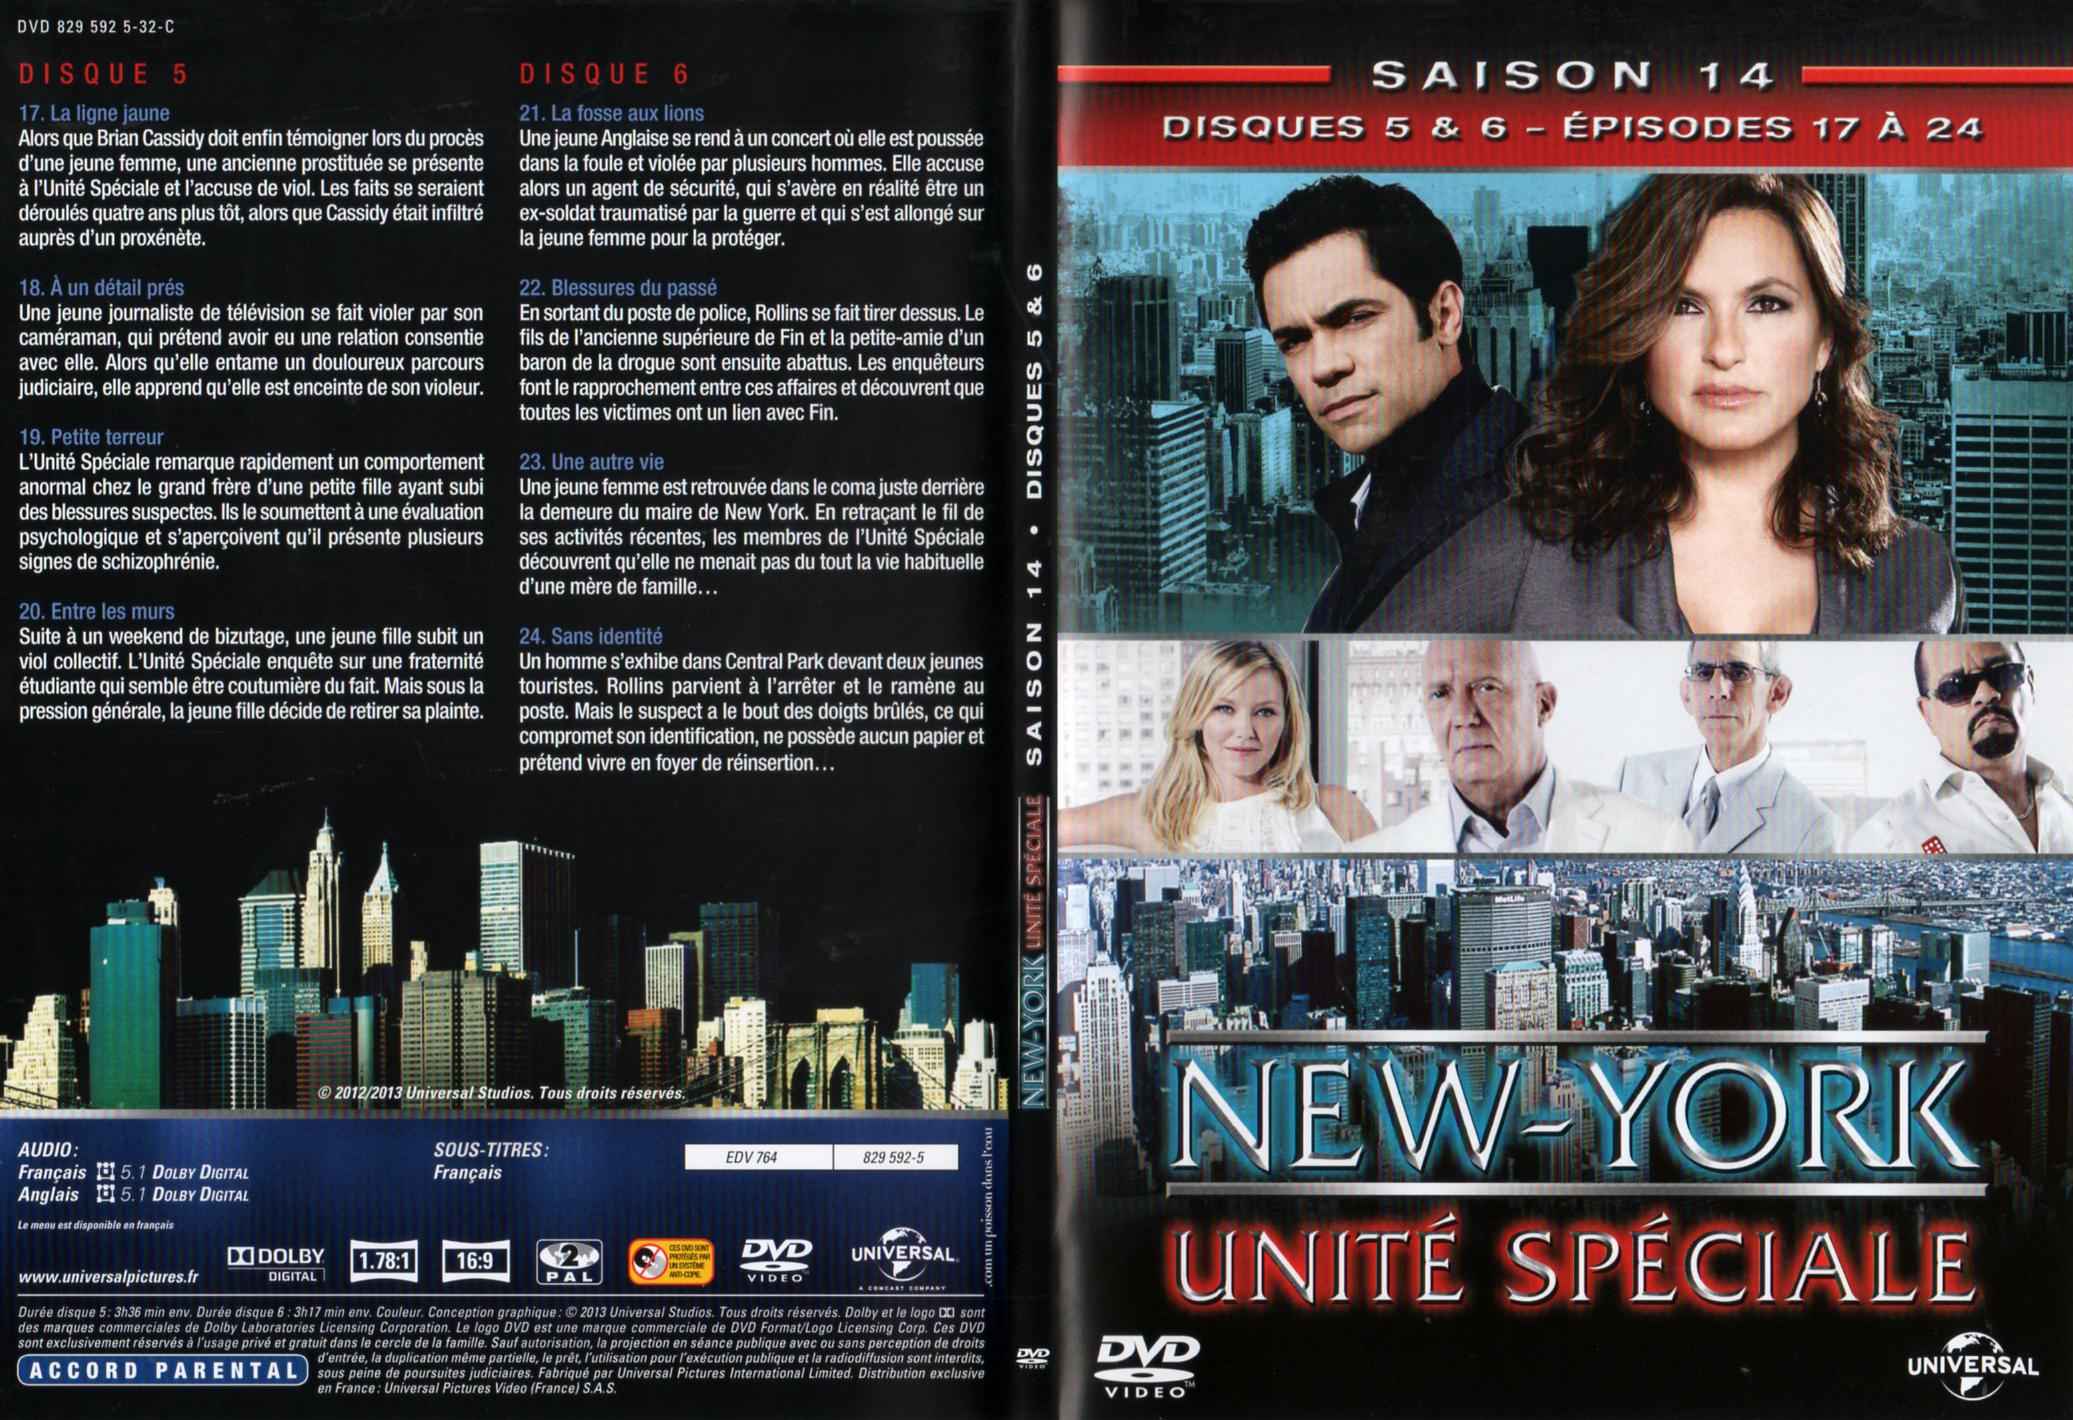 Jaquette DVD New York unit spciale saison 14 DVD 3